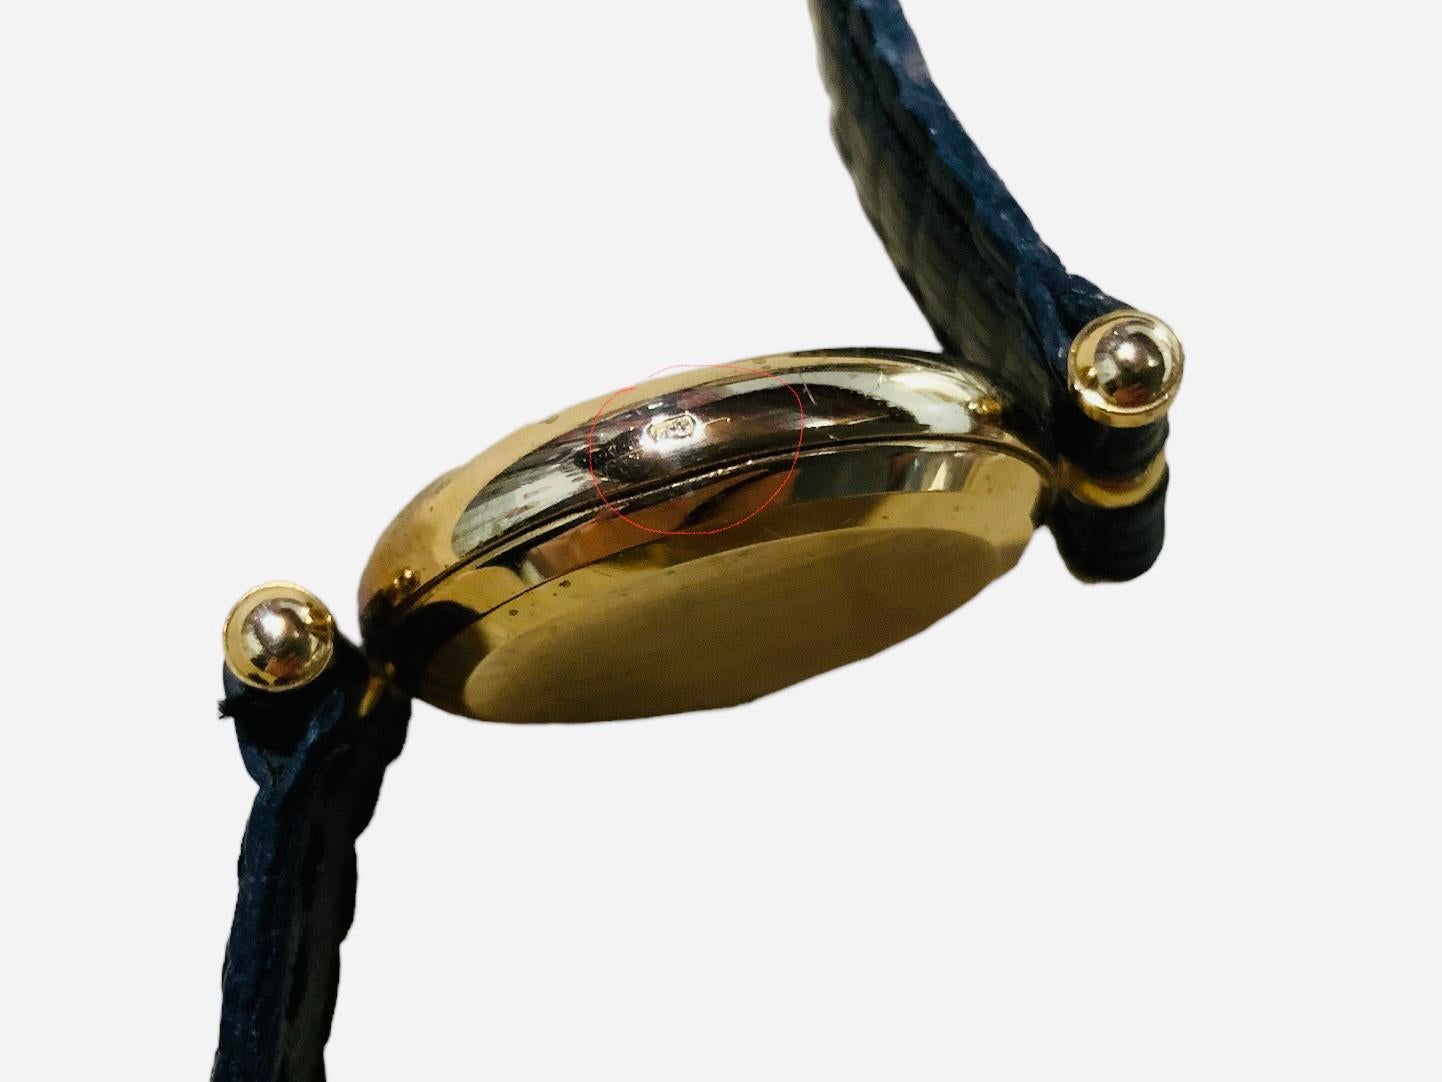 Il s'agit d'une montre-bracelet Van Cleef & Arpels Pierre Arpels pour femme. Elle présente un boîtier rond en or 18 carats/750, un cadran doré avec des chiffres romains et des aiguilles des heures et des minutes de couleur noire. Une vitre recouvre